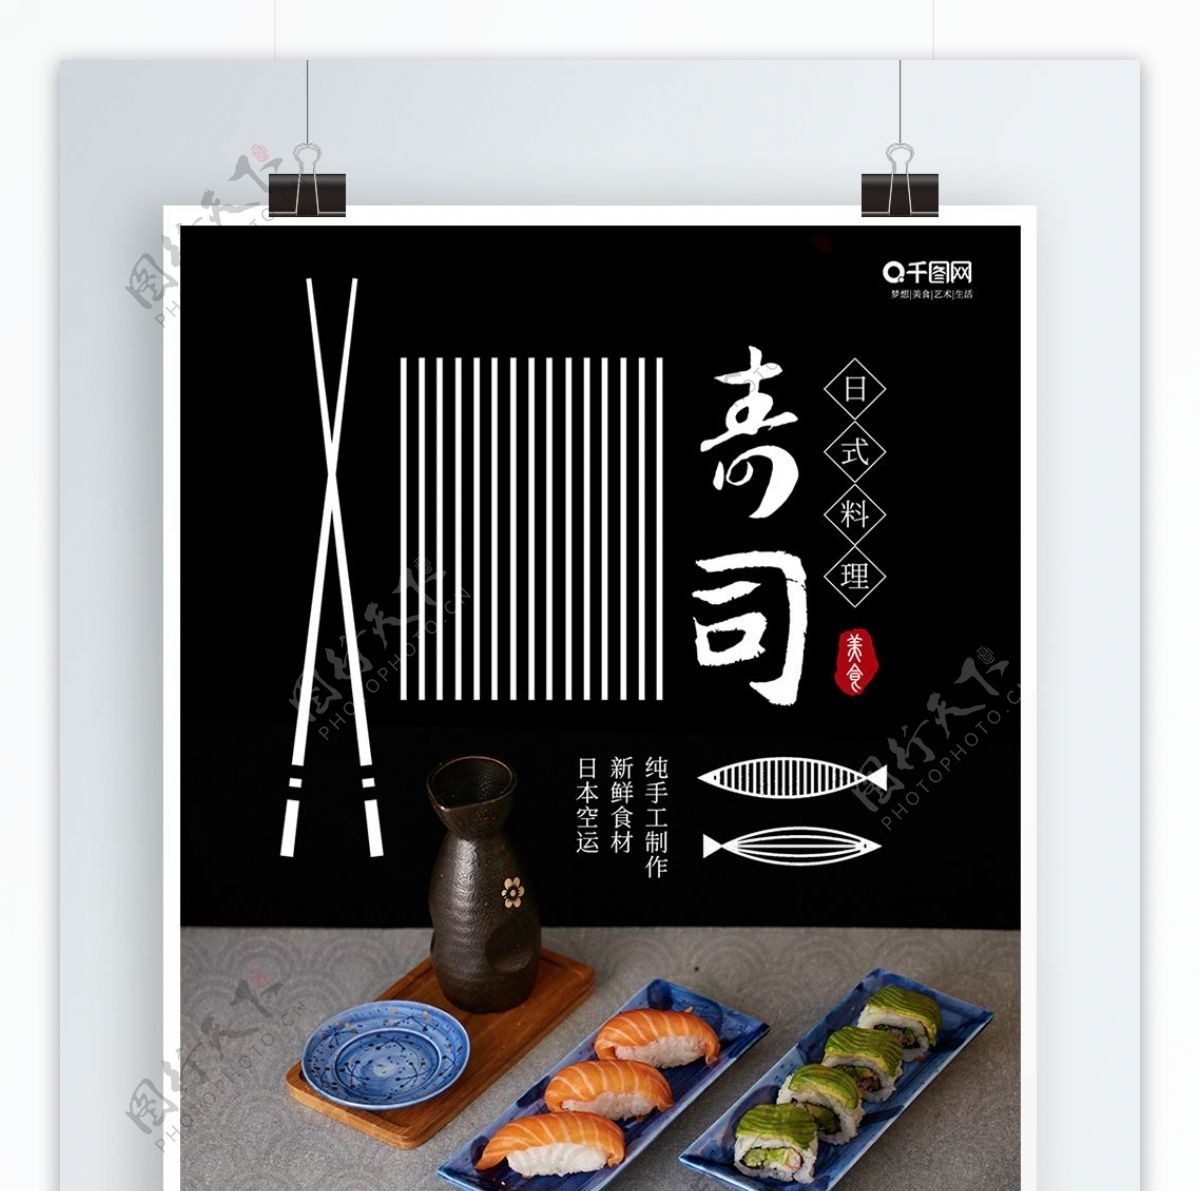 创意简约日式料寿司美食宣传促销海报